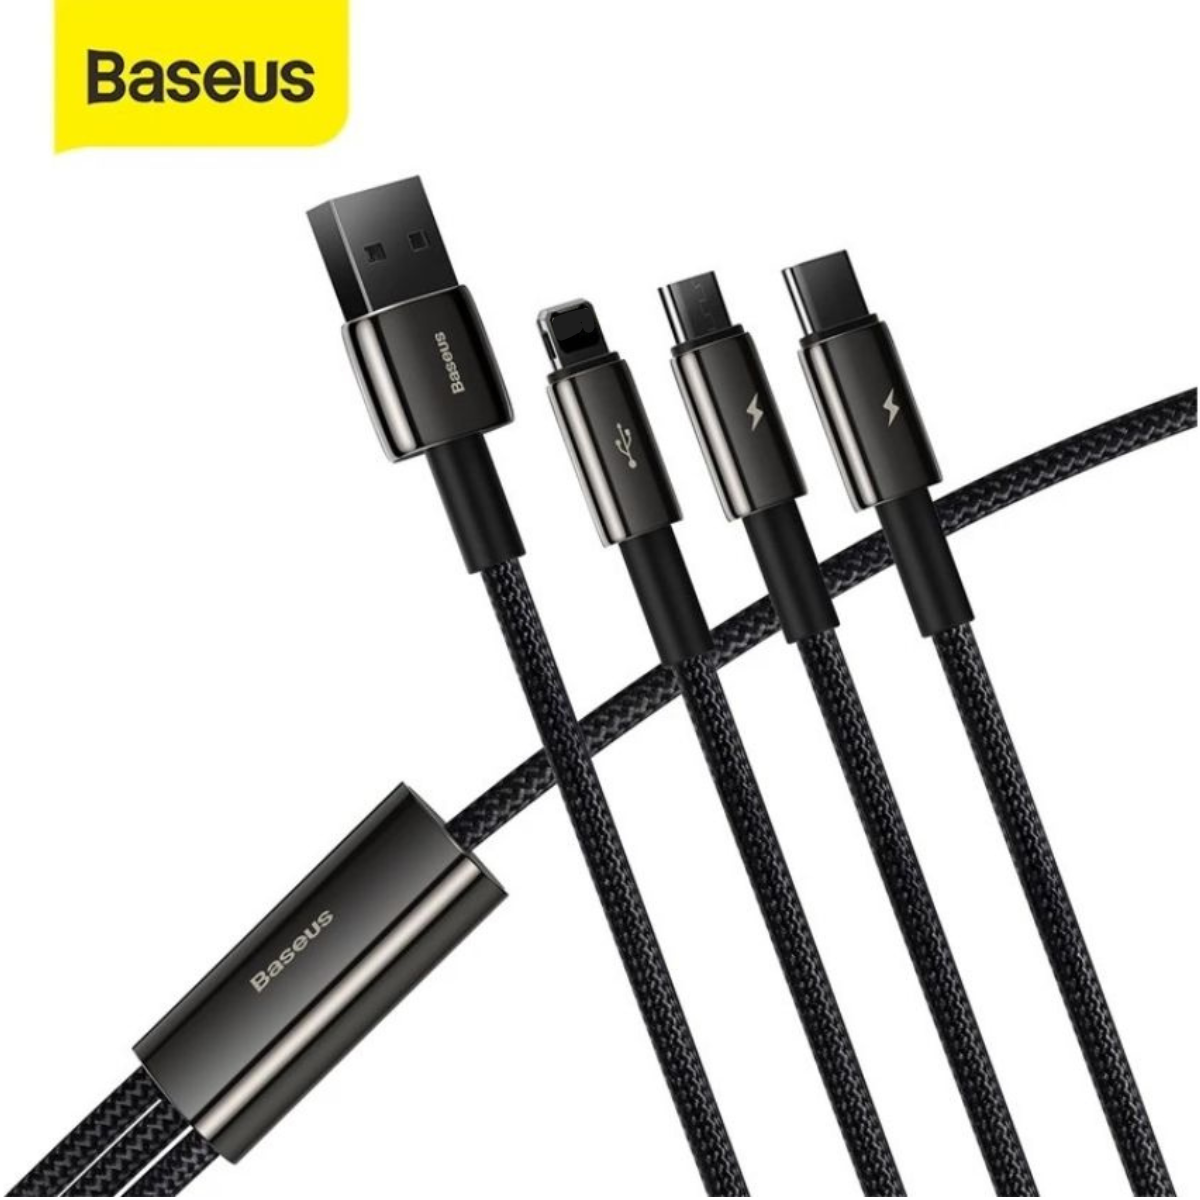 Cáp sạc 3 đầu siêu bền Baseus Tungsten Gold Series 3 in 1 (USB to Type C/ Light-ning/ Micro USB, 3.5A Fast Charging & Data Cable)- Hàng chính hãng